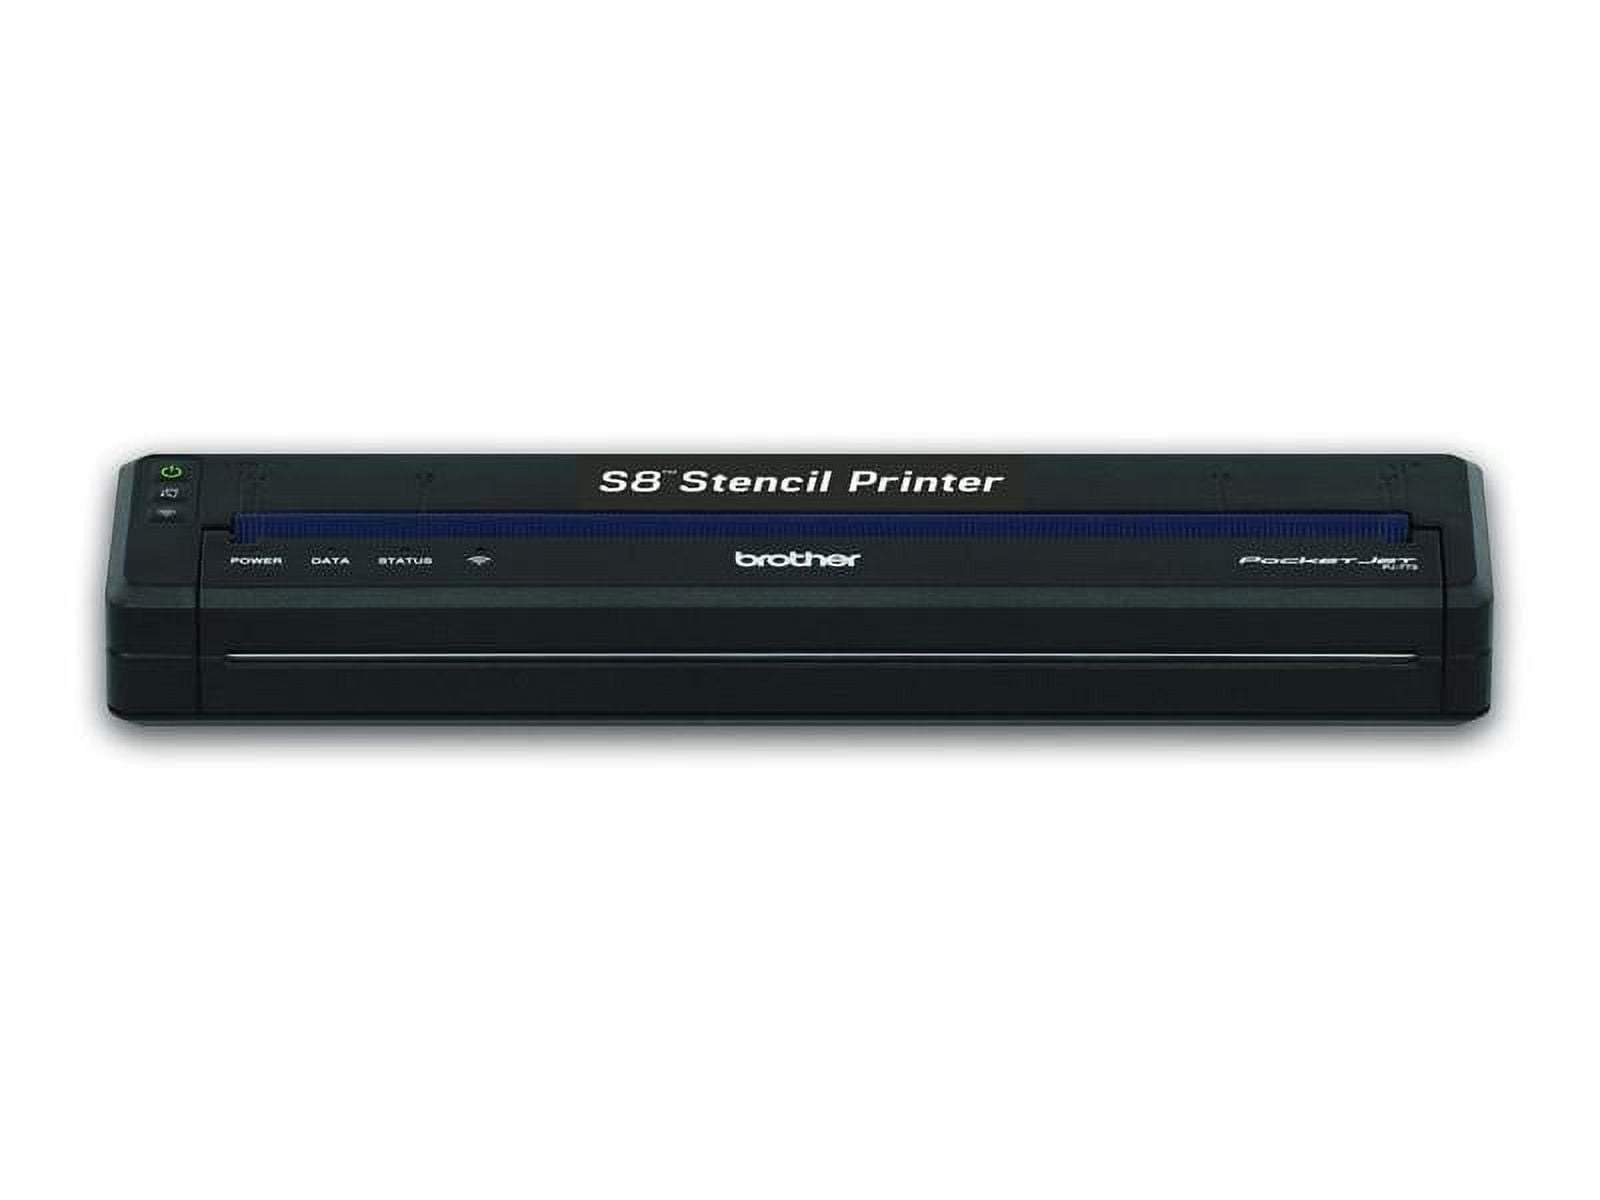 S8 Stencil Printer - AirPrint Kit 